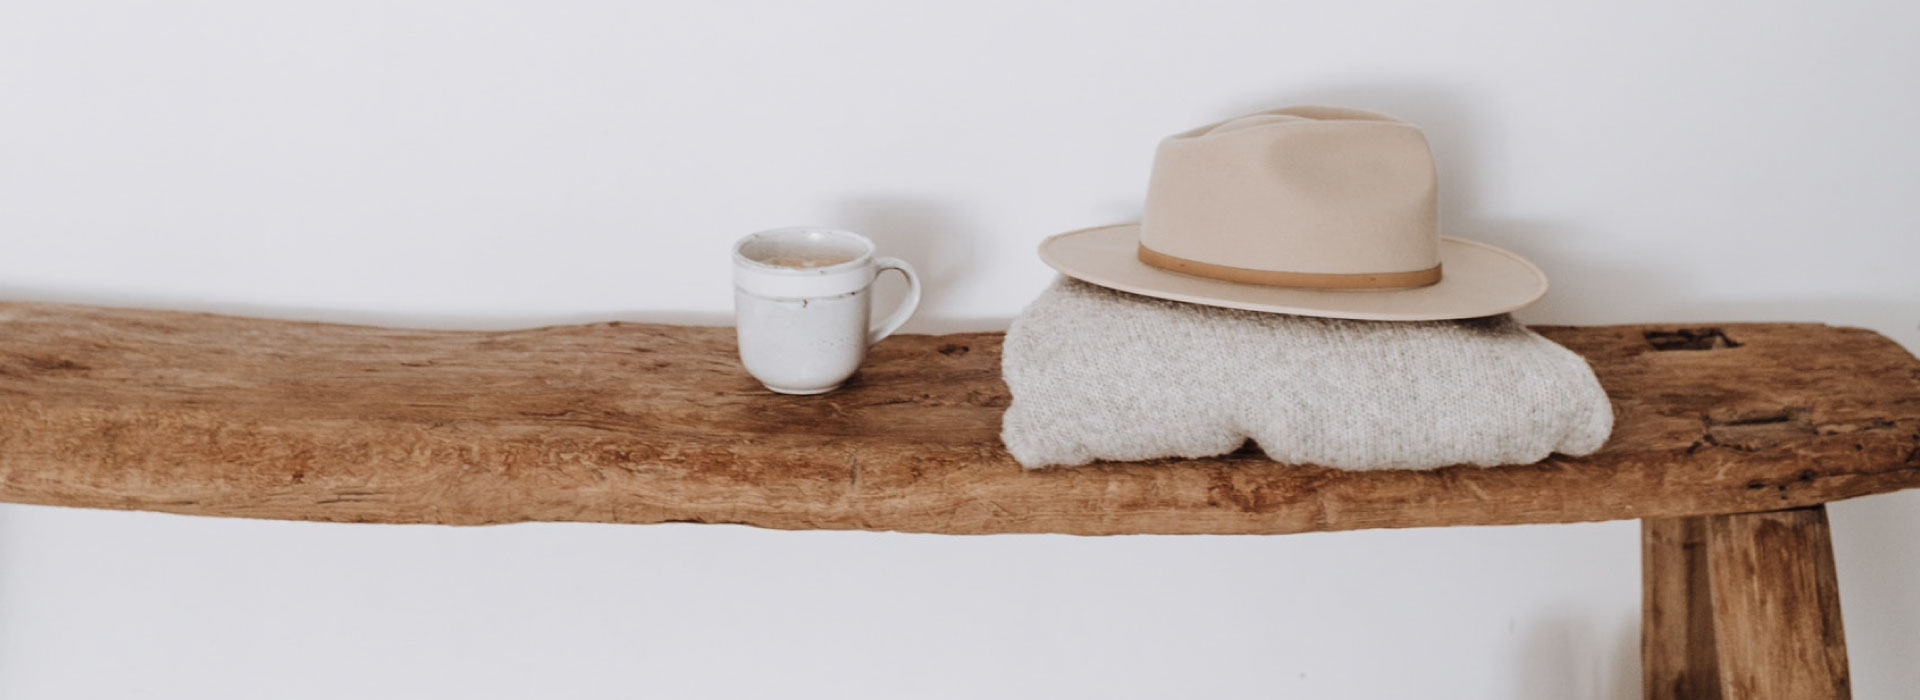 Drewniana ławka, na której stoi kubek z kawą oraz złożony sweter i kapelusz. Pod ławką stoją czarne buty i widoczny jest fragment dywanu.